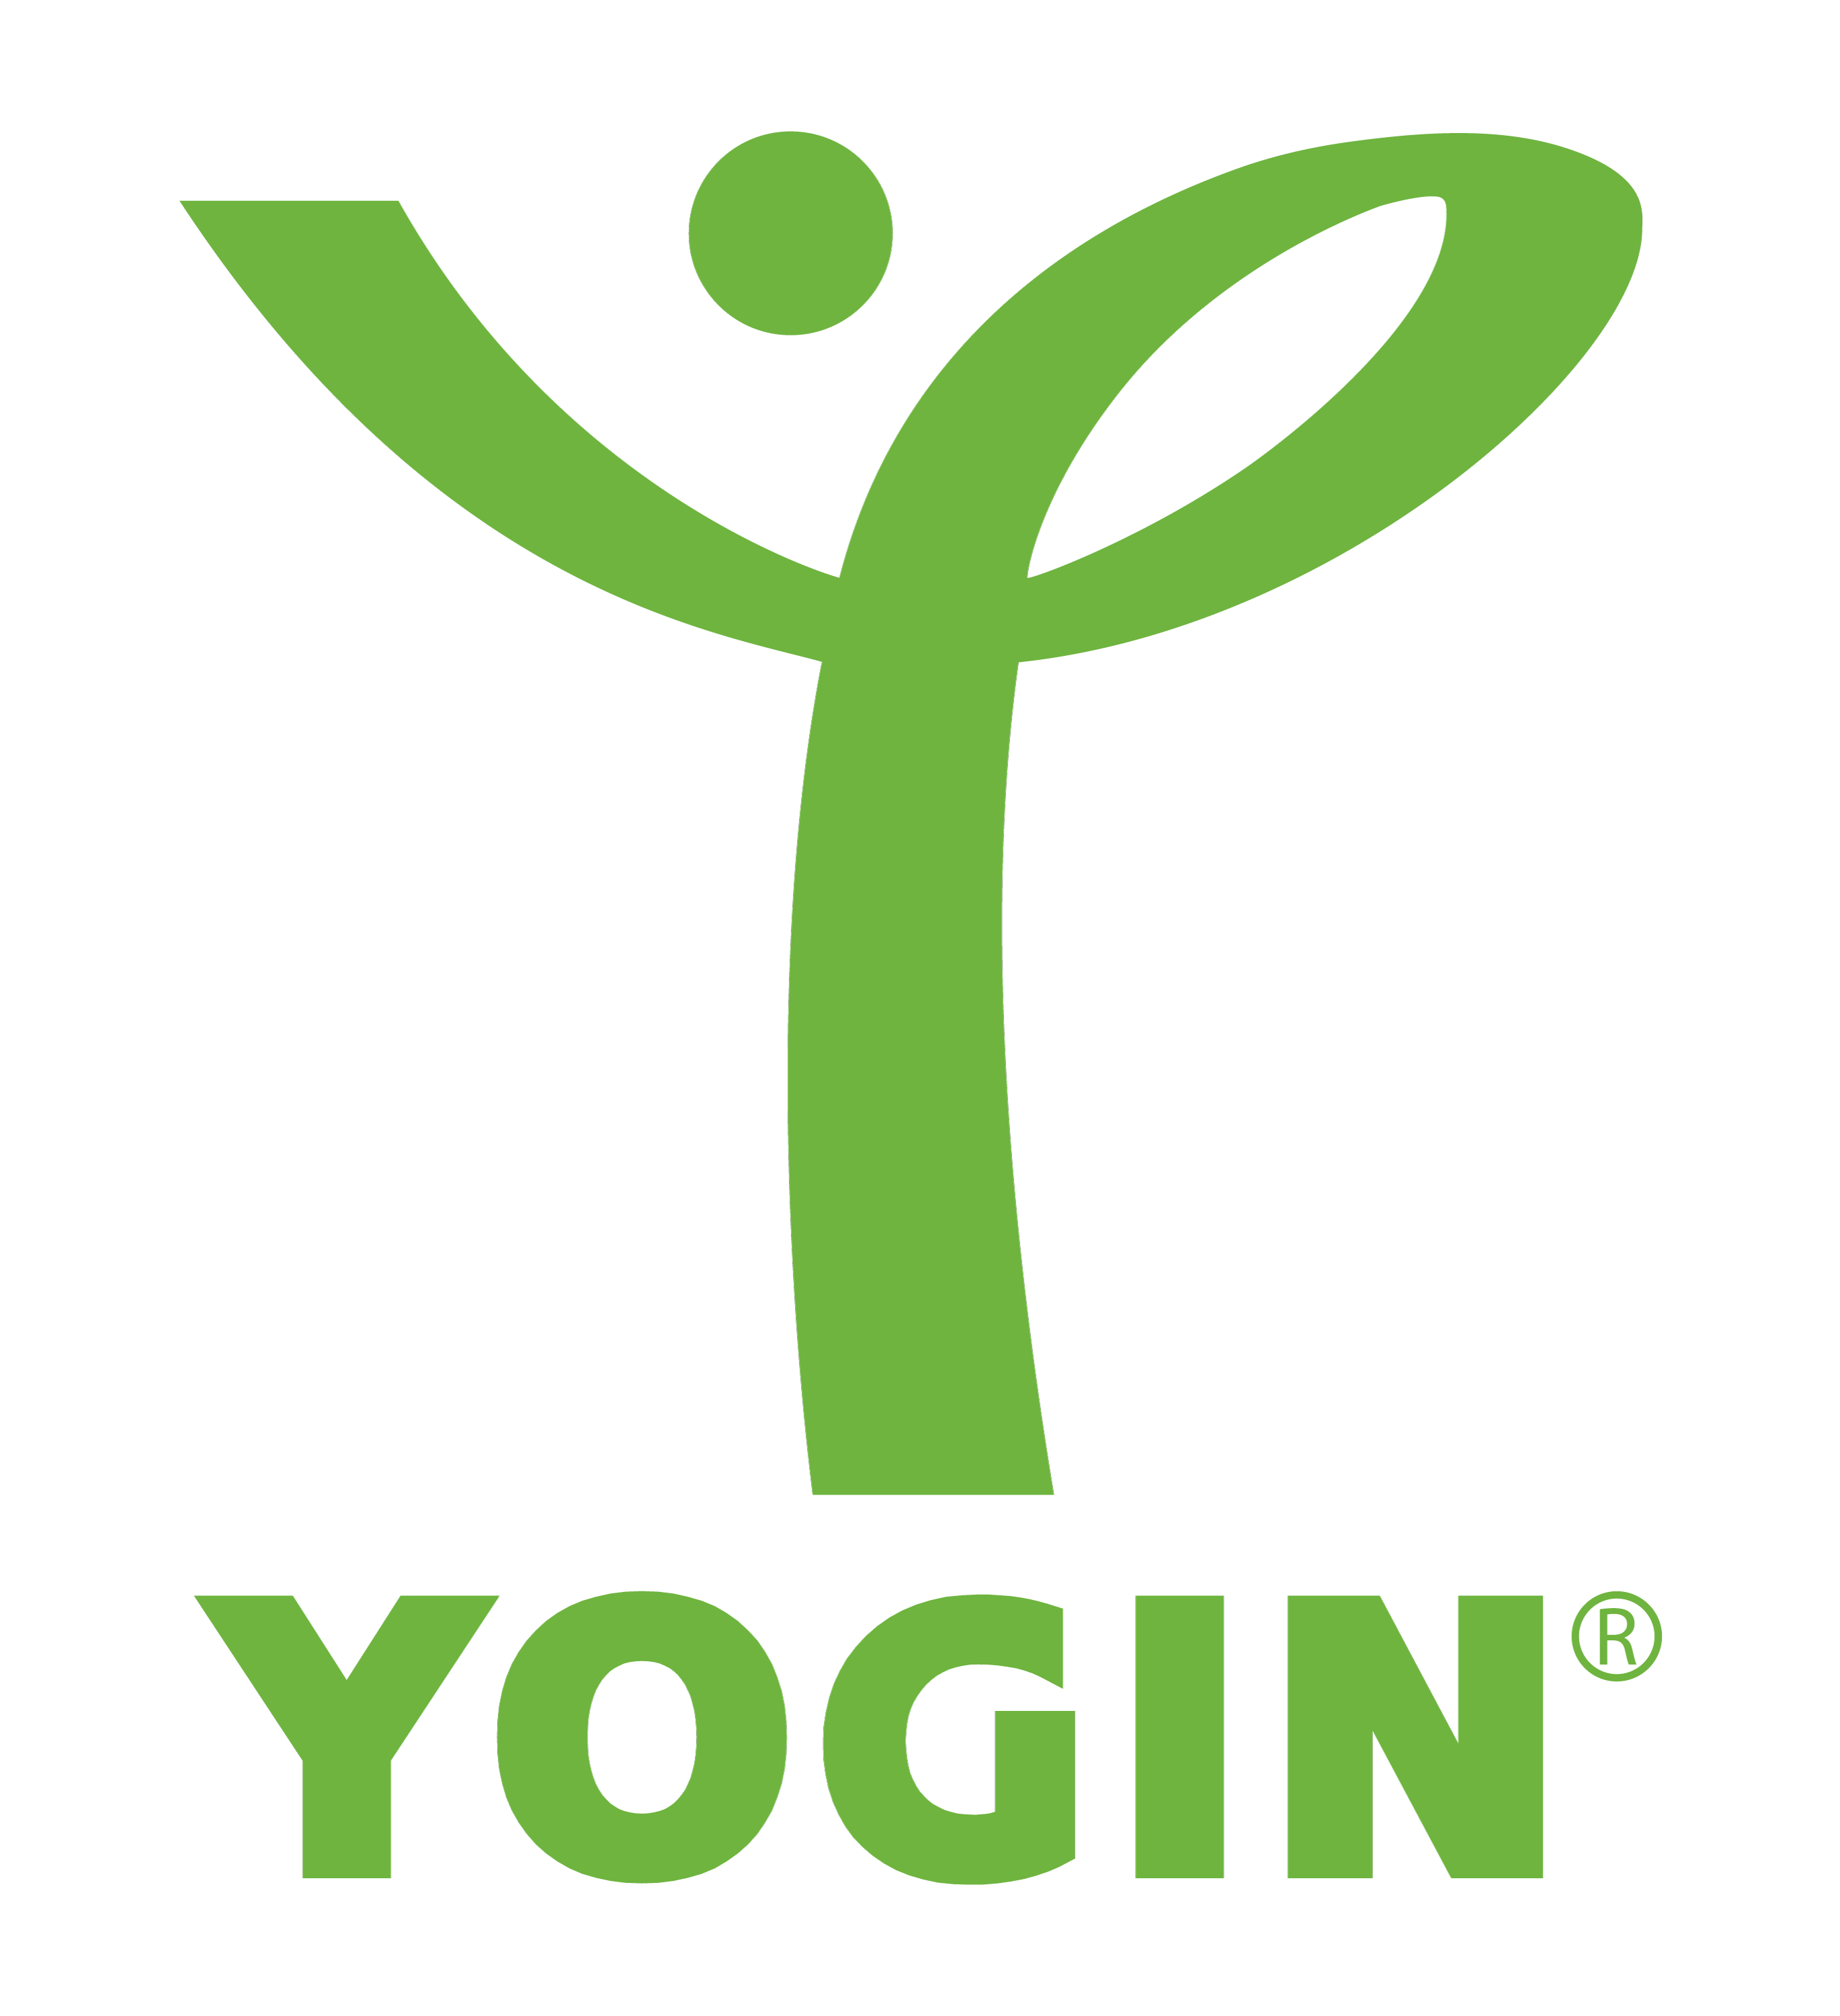 yogin logo 3000x2738 1